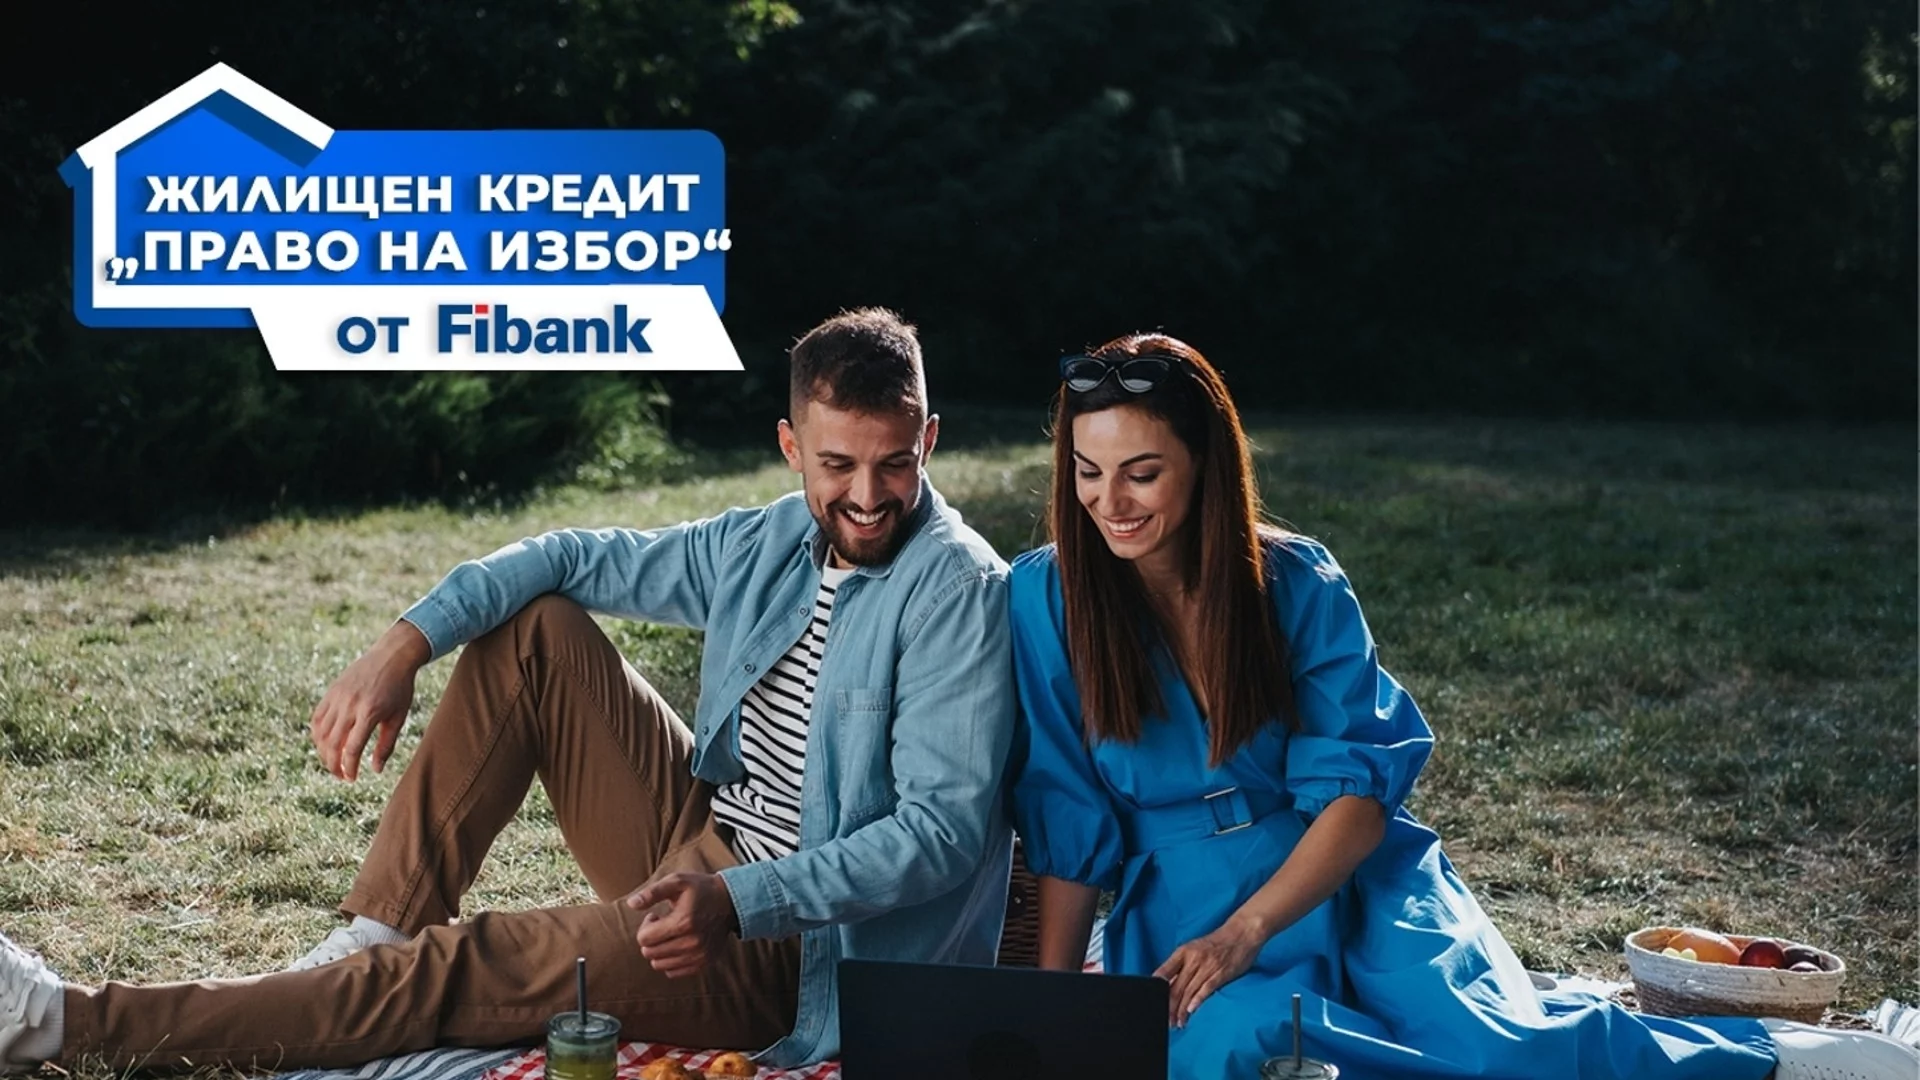 Ипотечните кредити от Fibank с нови промоционални условия